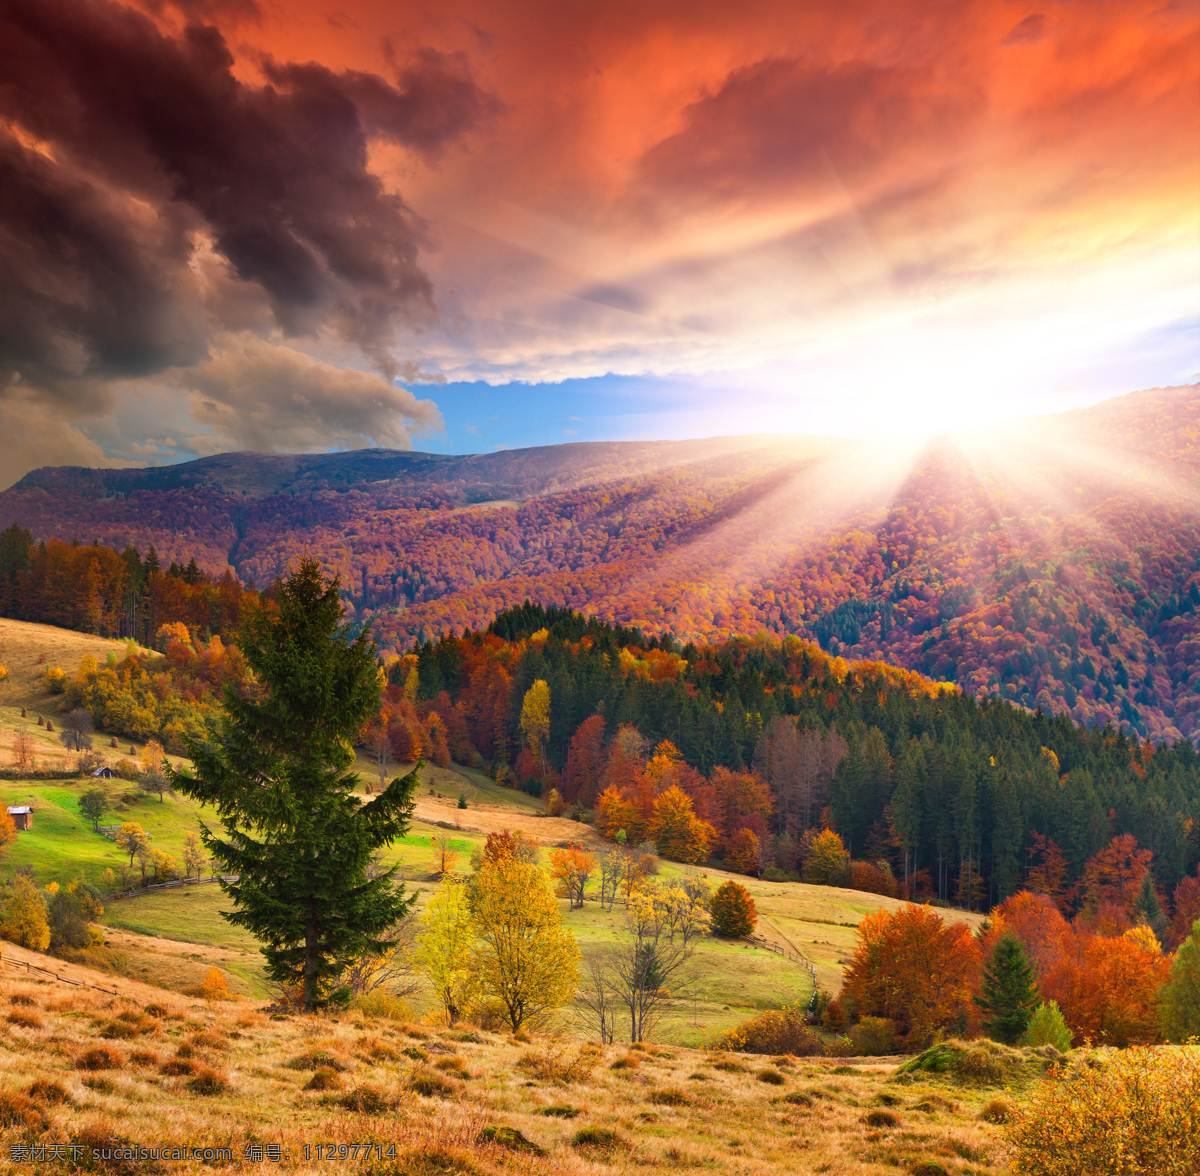 阳光 下 秋天 森林 秋季 草坪 树木 自然风光 山水风景 风景图片